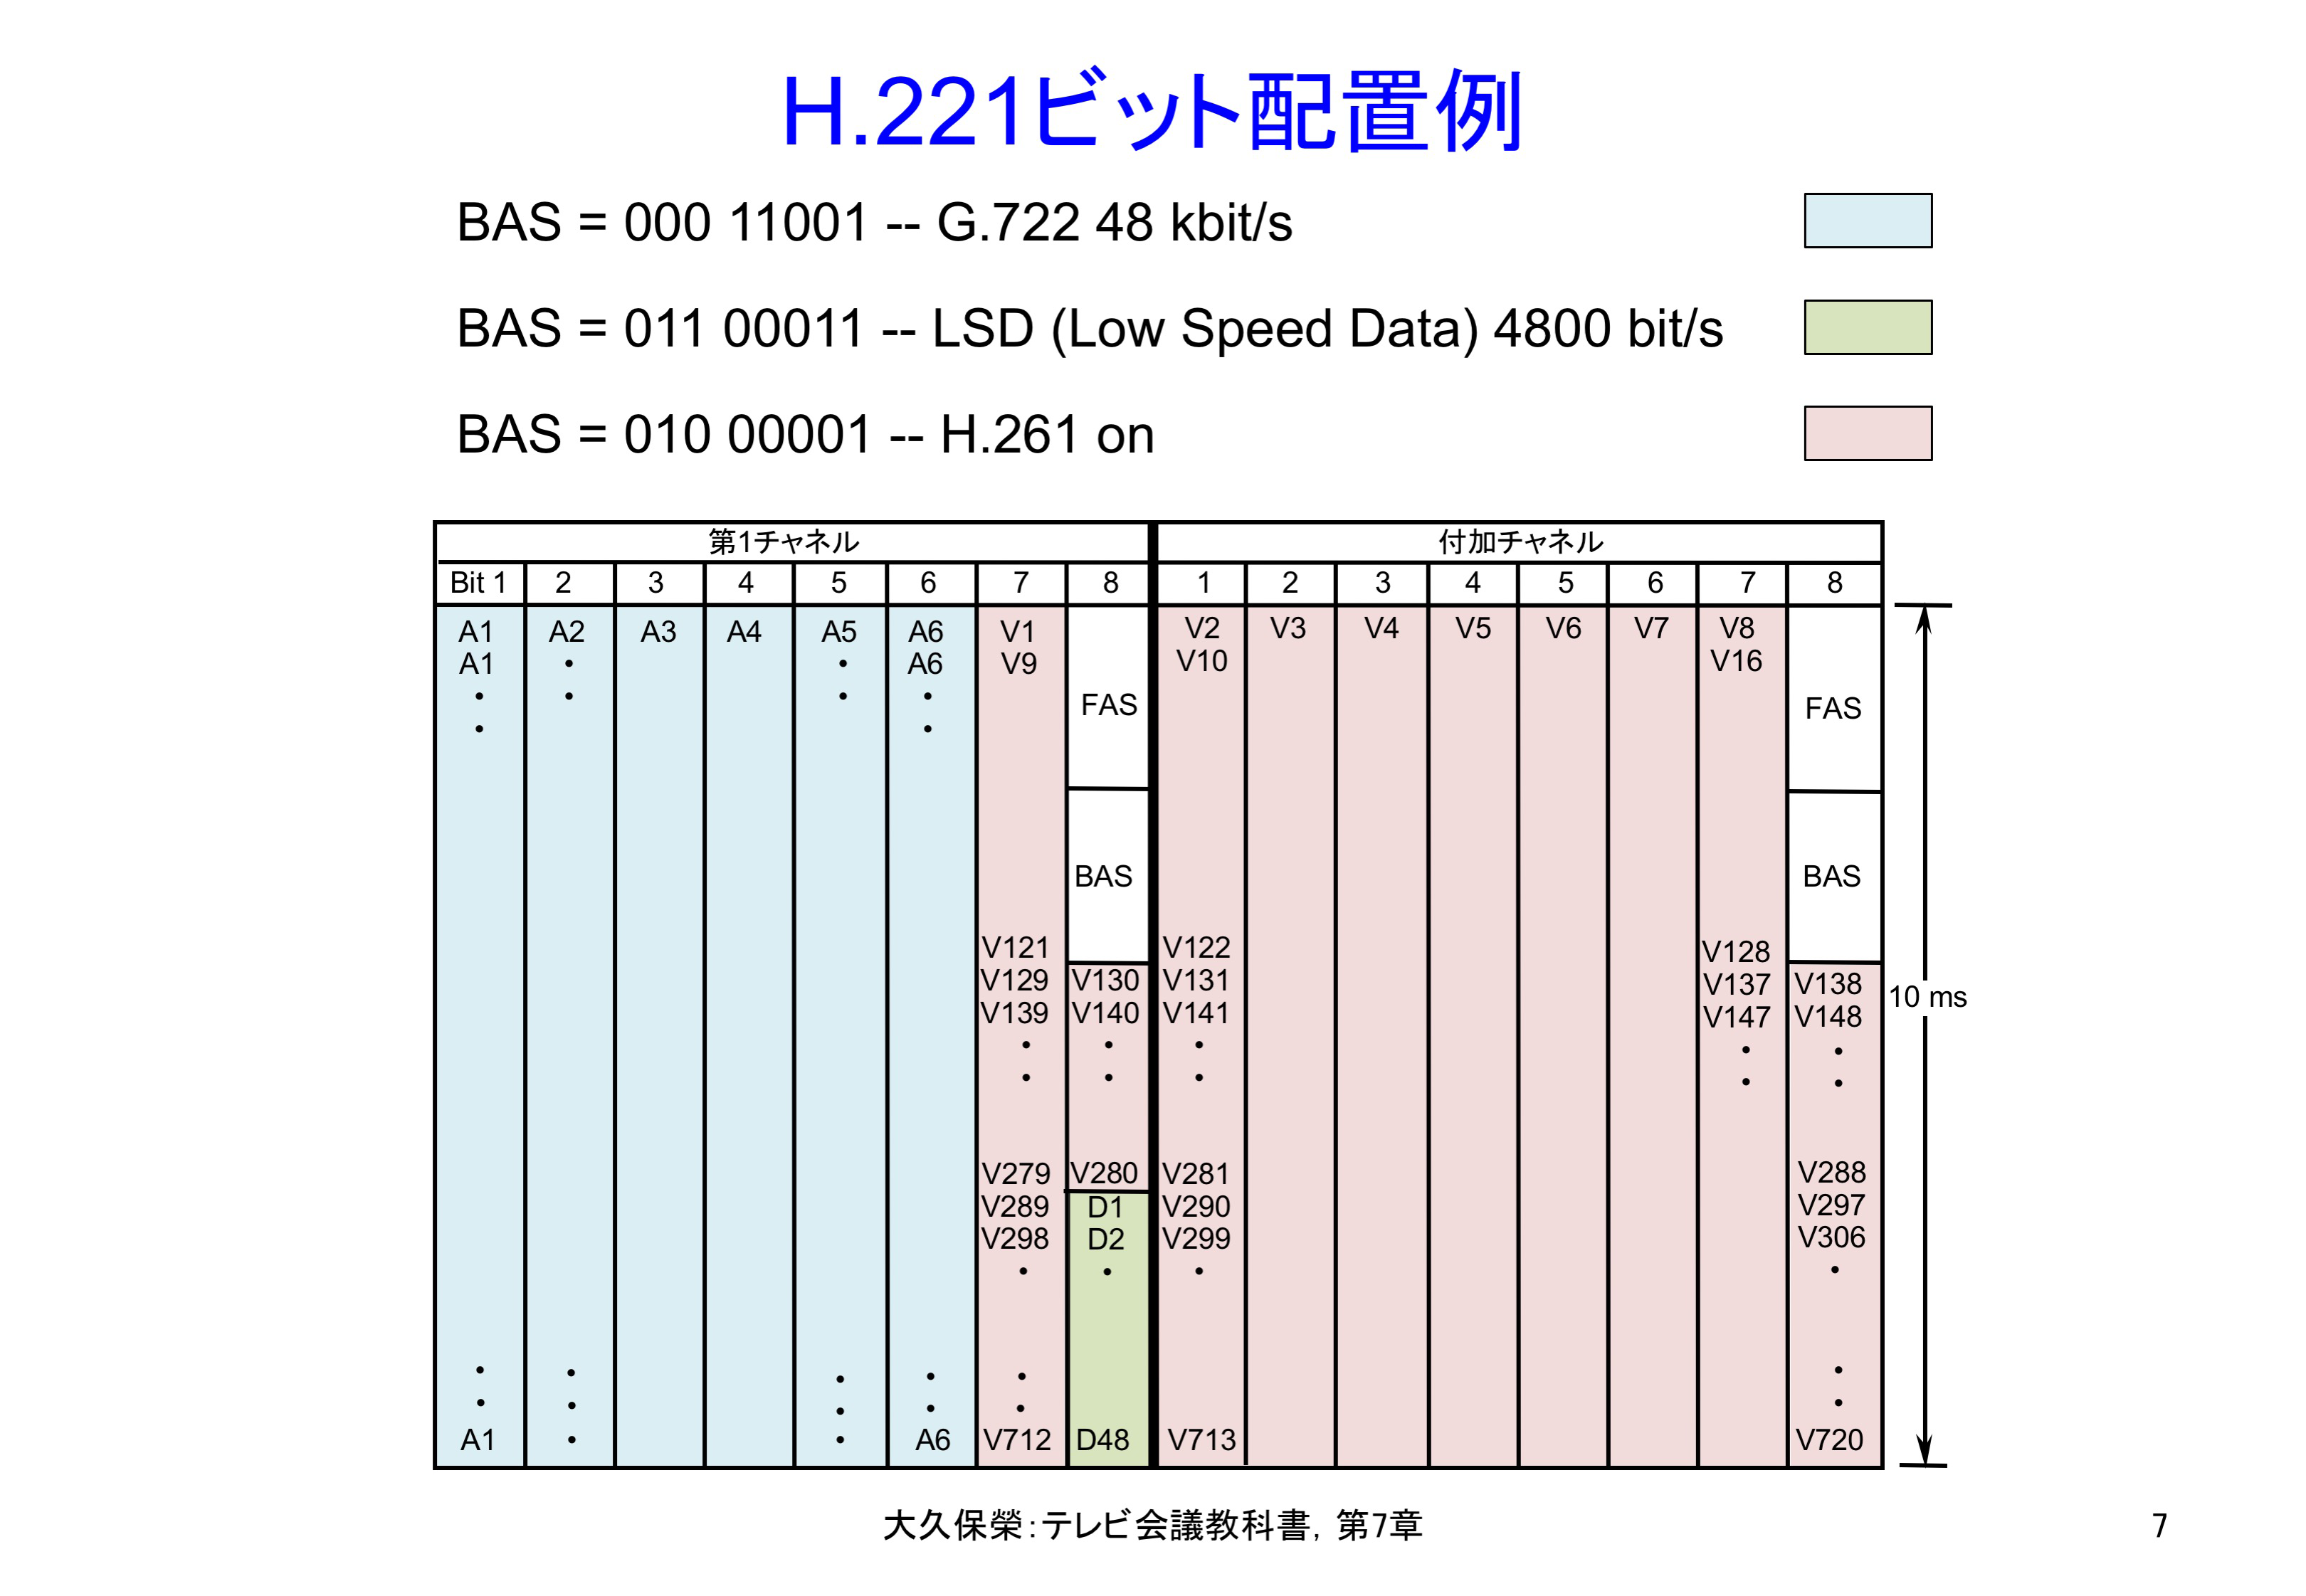 図7-7 H.221ビット配置例